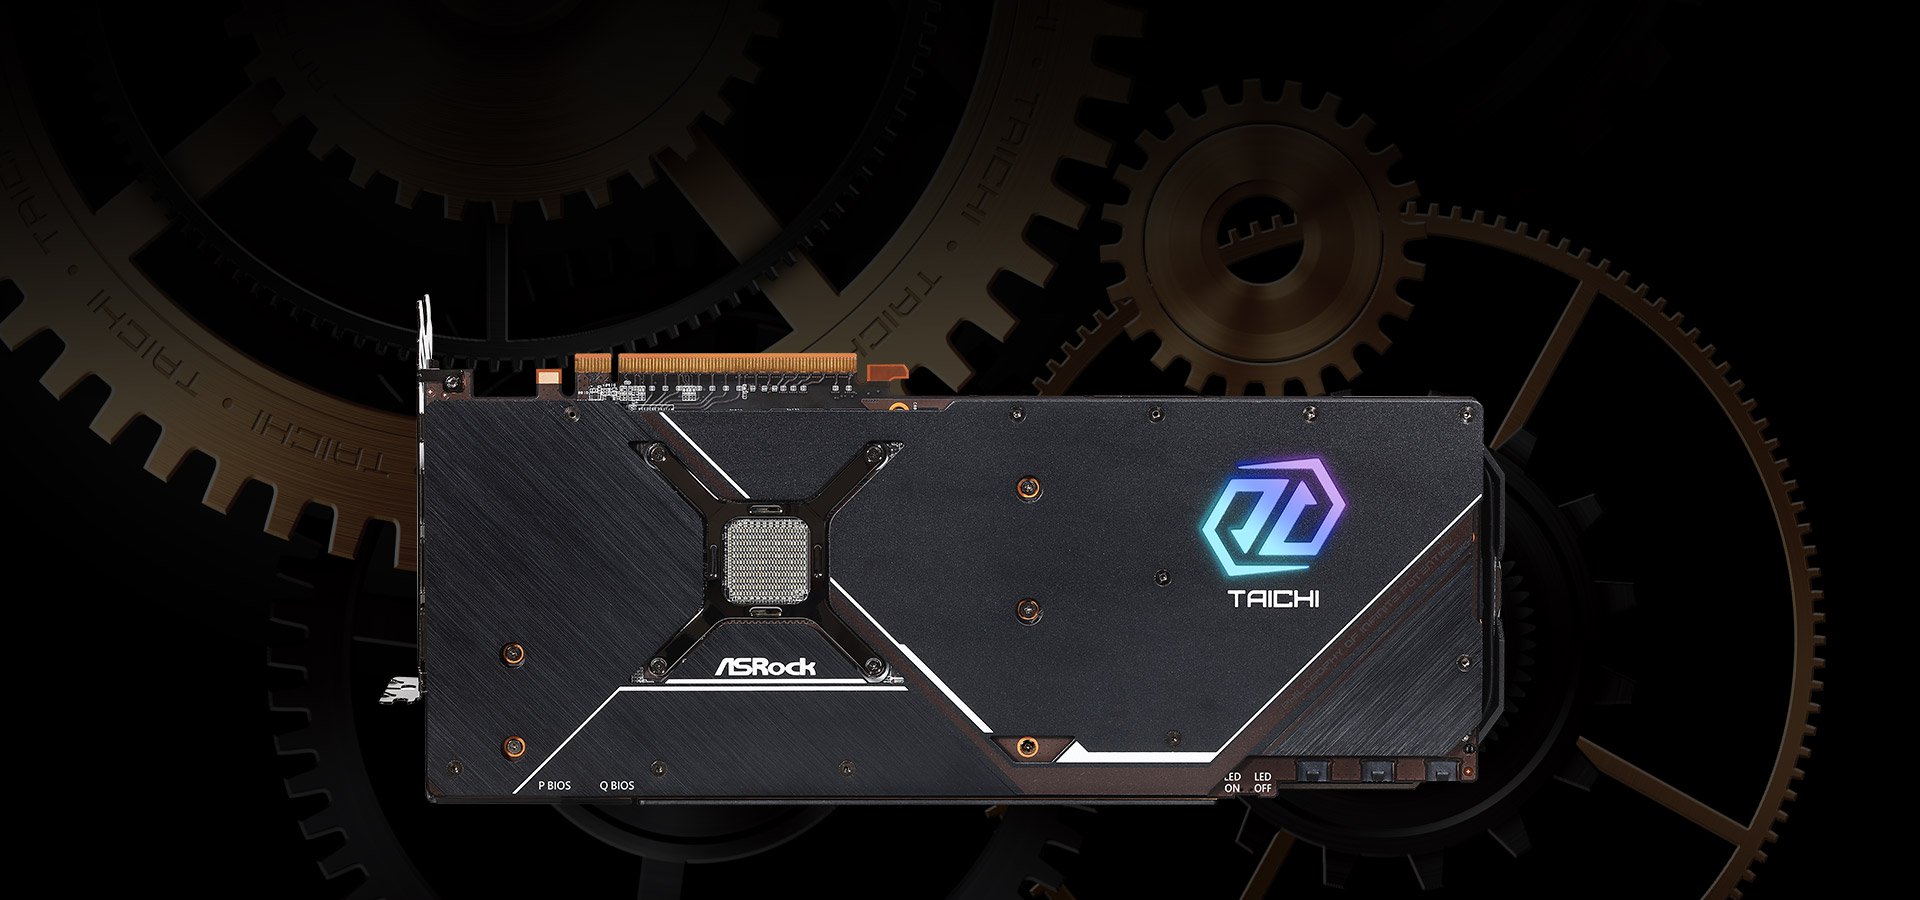 ASRock Radeon RX 6800 XT Taichi X Review - Pictures & Teardown